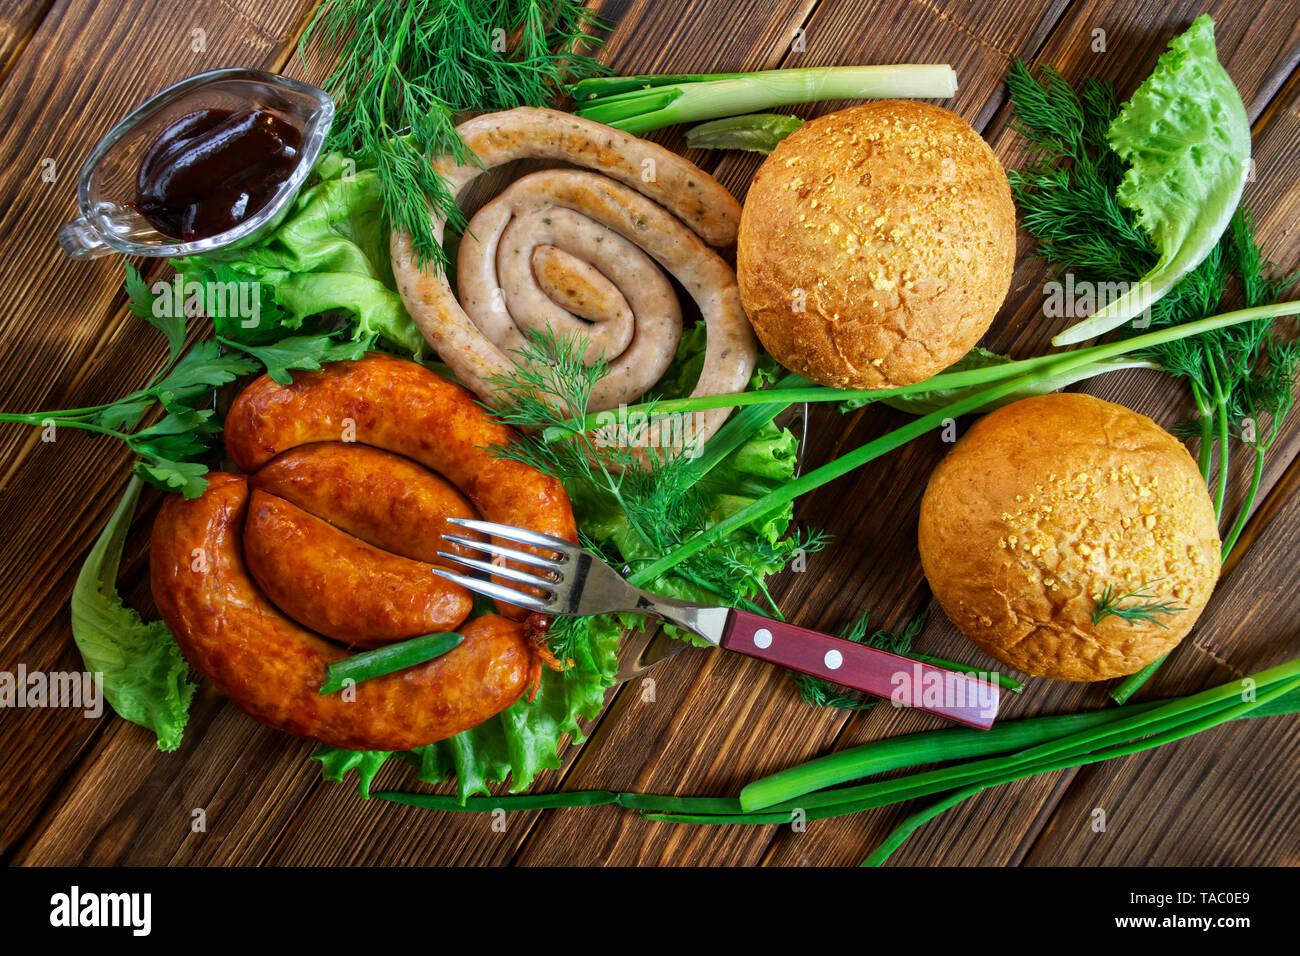 Mais Brötchen, gegrillte Würstchen, und eine transparente Sauce - pan liegen auf einem Holz- Oberfläche mit Gruenen: Salat, Dill, Zwiebel und Petersilie. Picknick - Grill. Vie Stockfoto